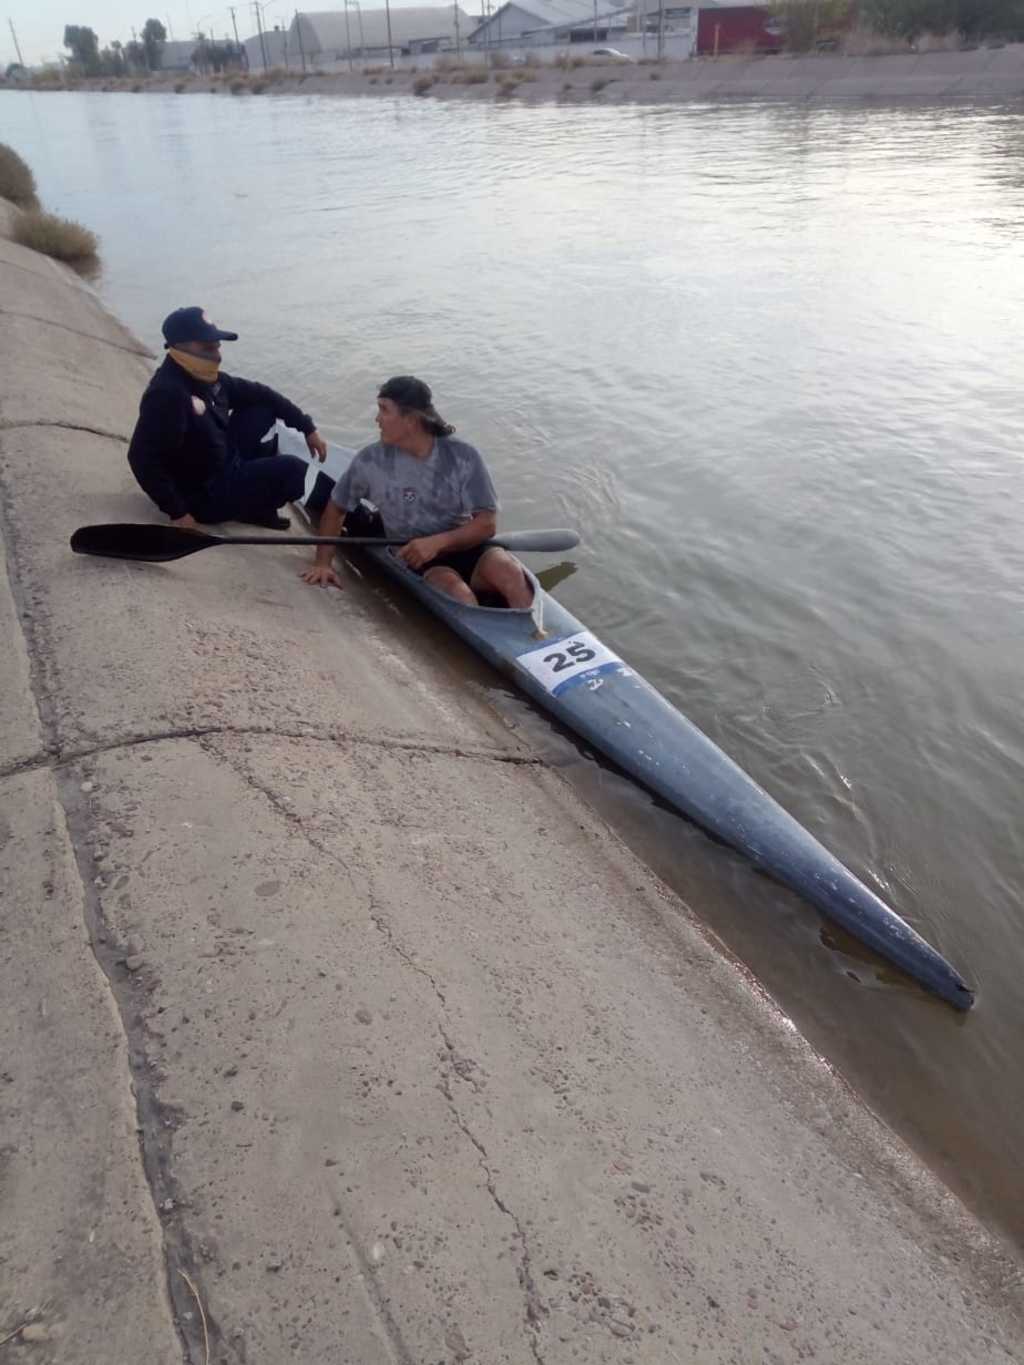 Ayer fue detectado un sujeto a bordo de un kayak en el Canal Sacramento y fue retirado por las autoridades municipales.